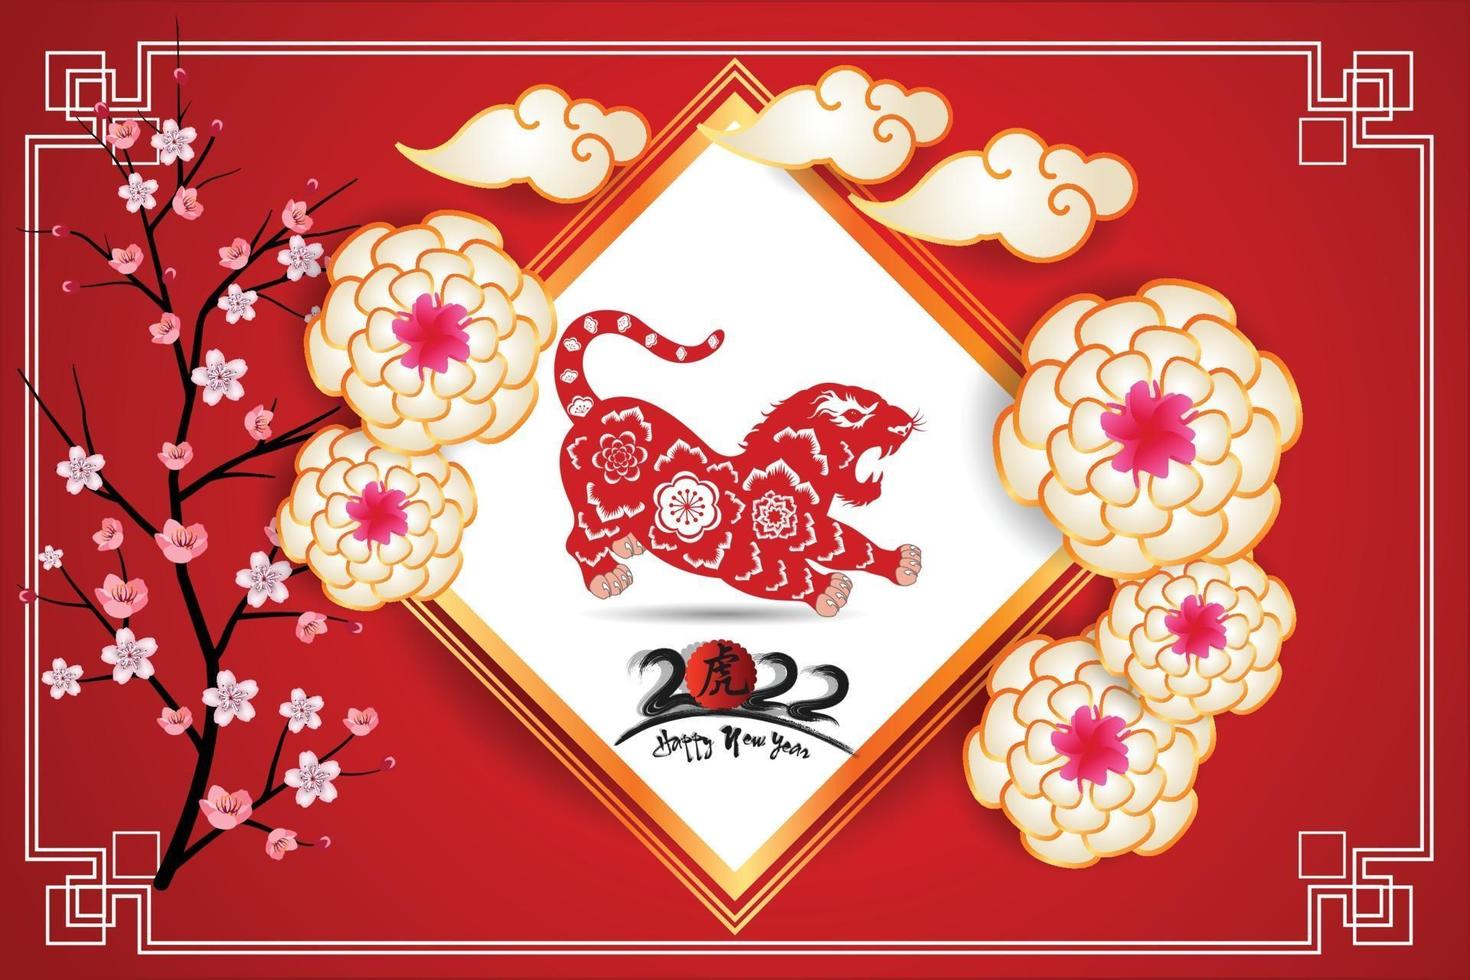 felice anno nuovo cinese 2022 - anno della tigre vettore